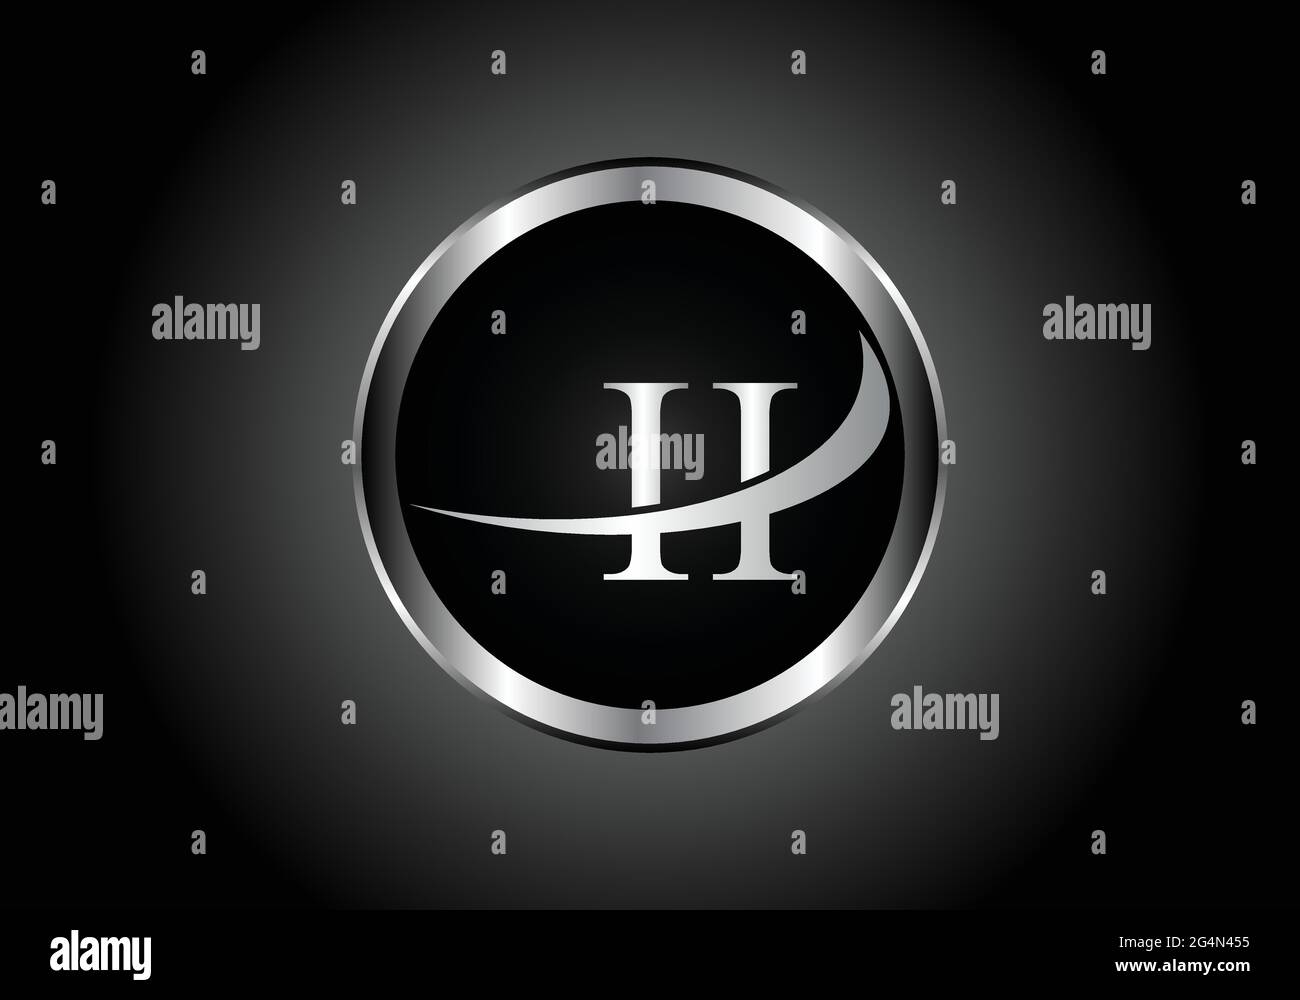 Silberner Buchstabe II Metallkombination Alphabet Logo Icon-Design mit grauer Farbe auf Schwarz-Weiß-Gradienten-Design für ein Unternehmen oder Unternehmen Stock Vektor